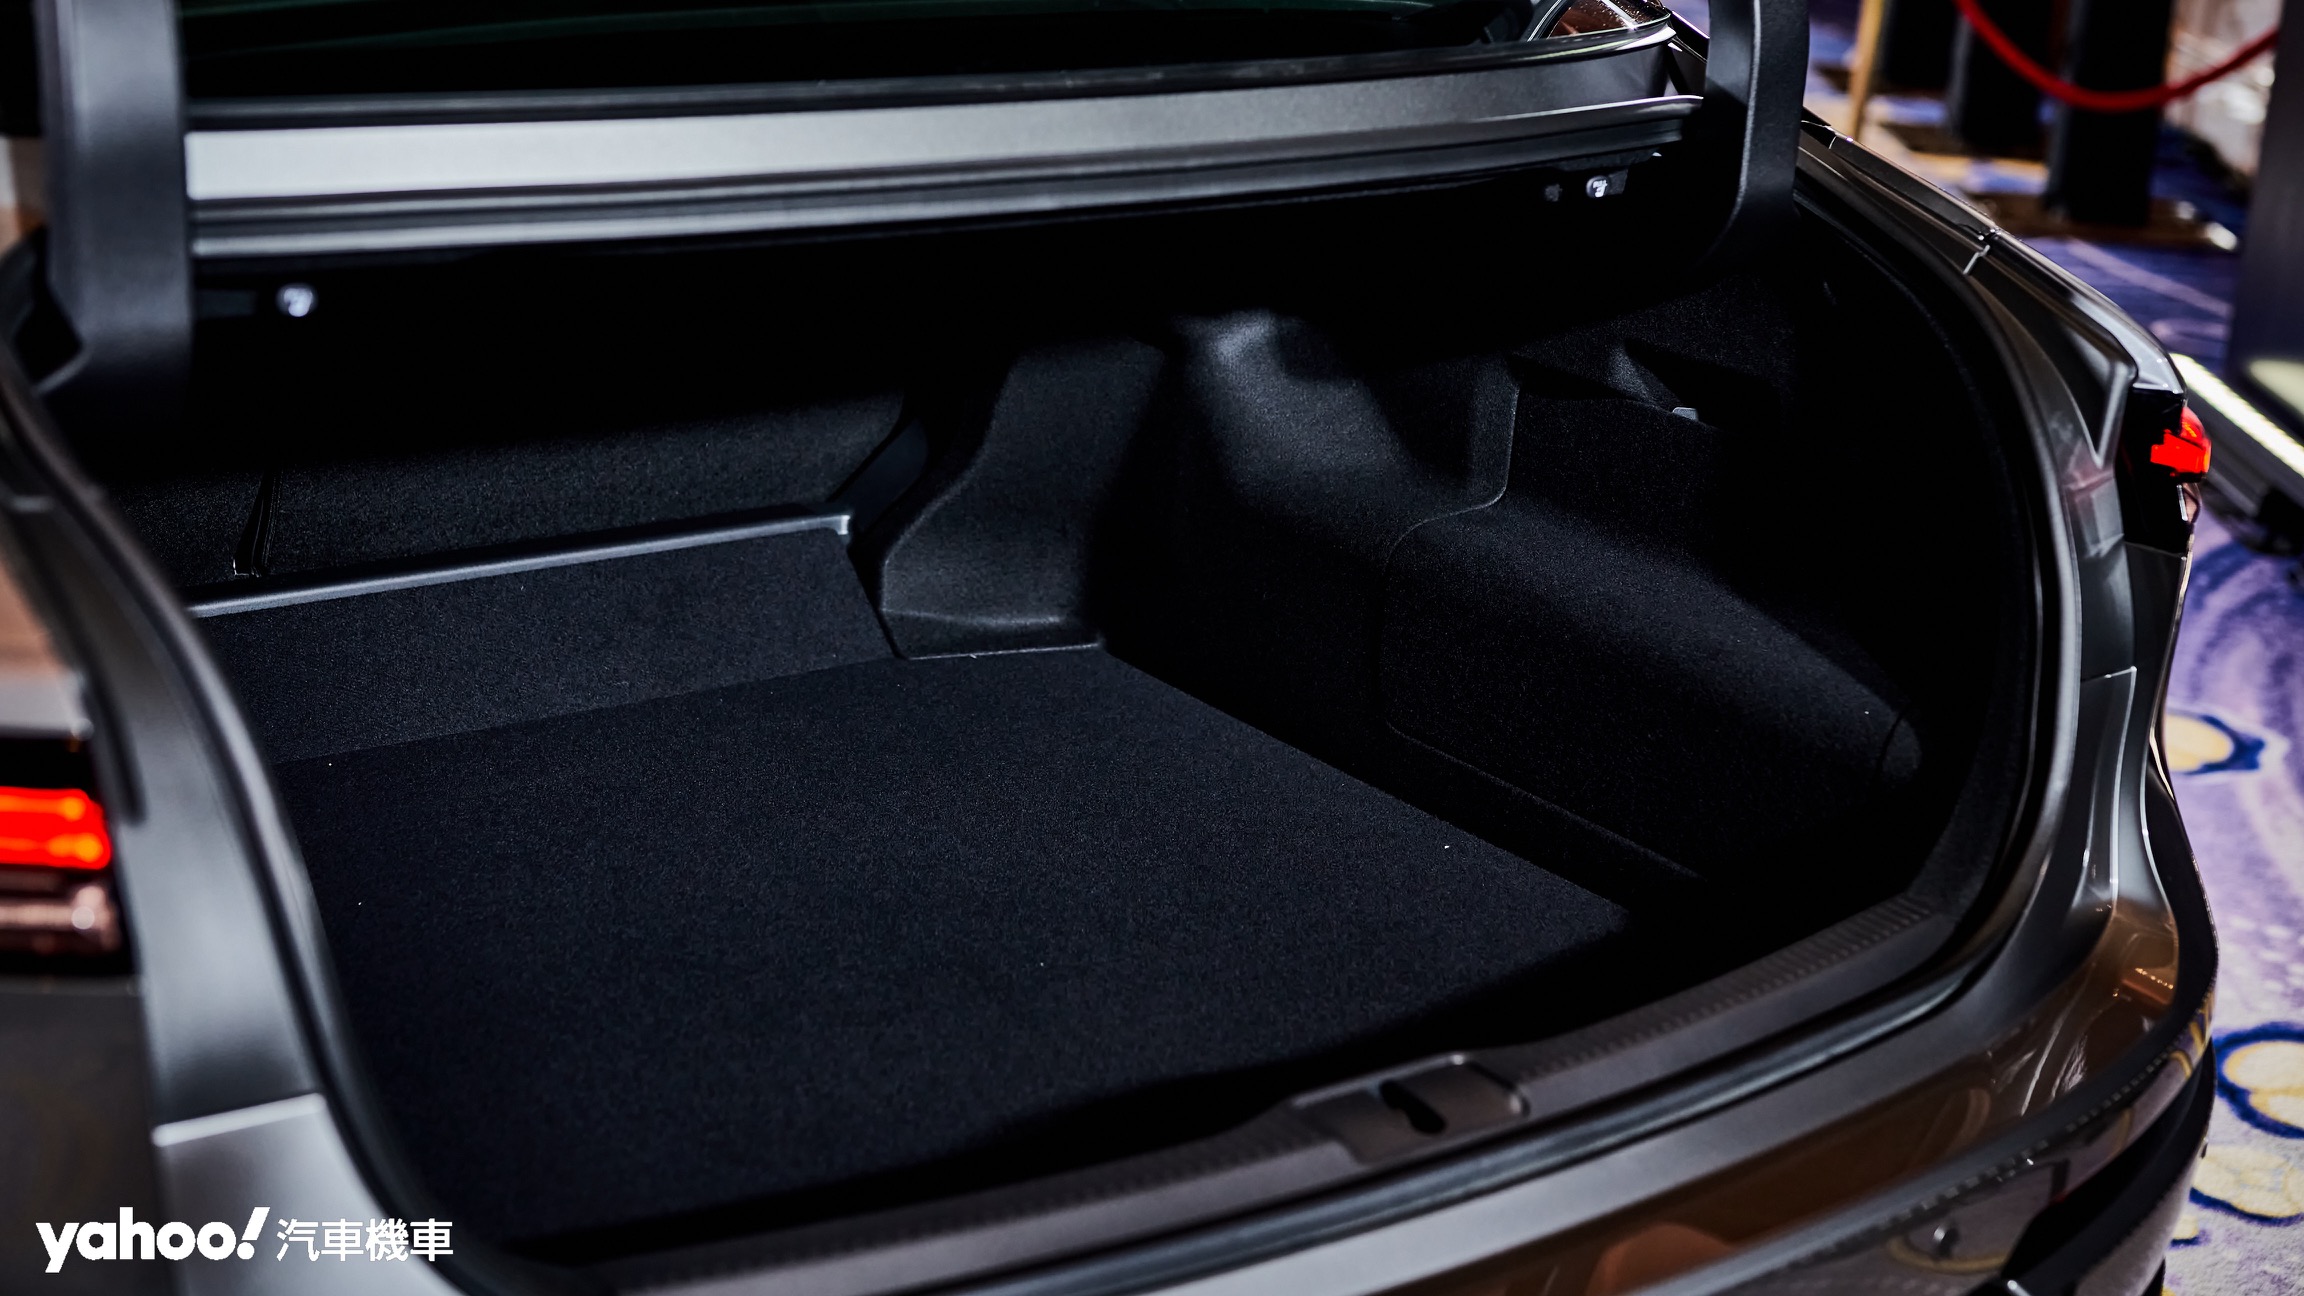 空間不若正統SUV卻依舊具備Toyota傳統訴求的平整方正與開口寬闊。